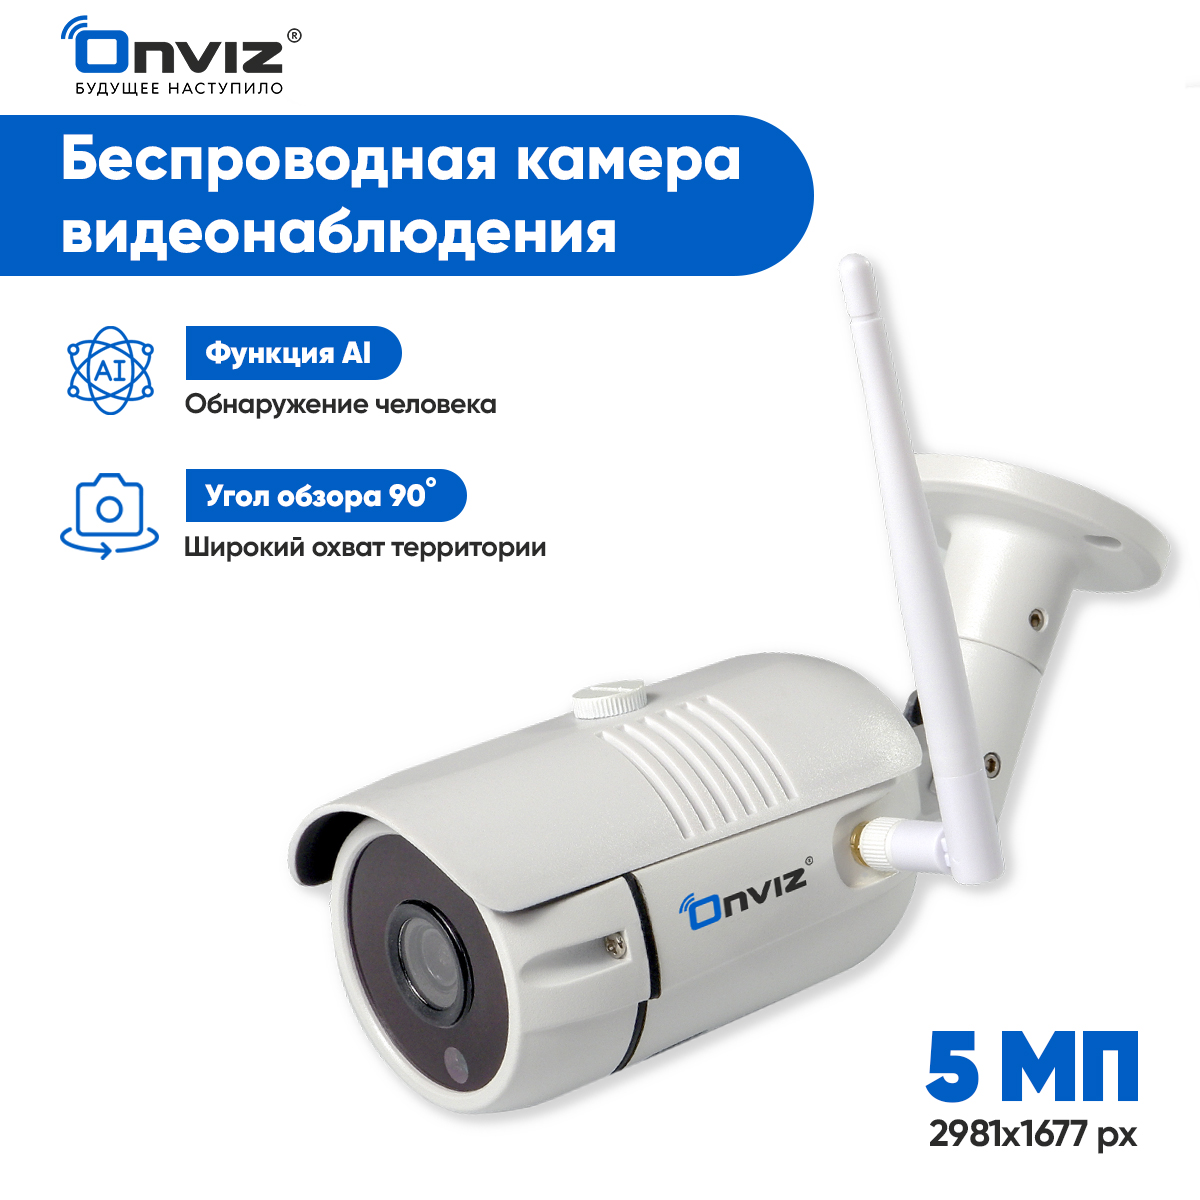 фото Камера видеонаблюдения onviz u340, 5 мп уличная wifi ip с датчиком движения